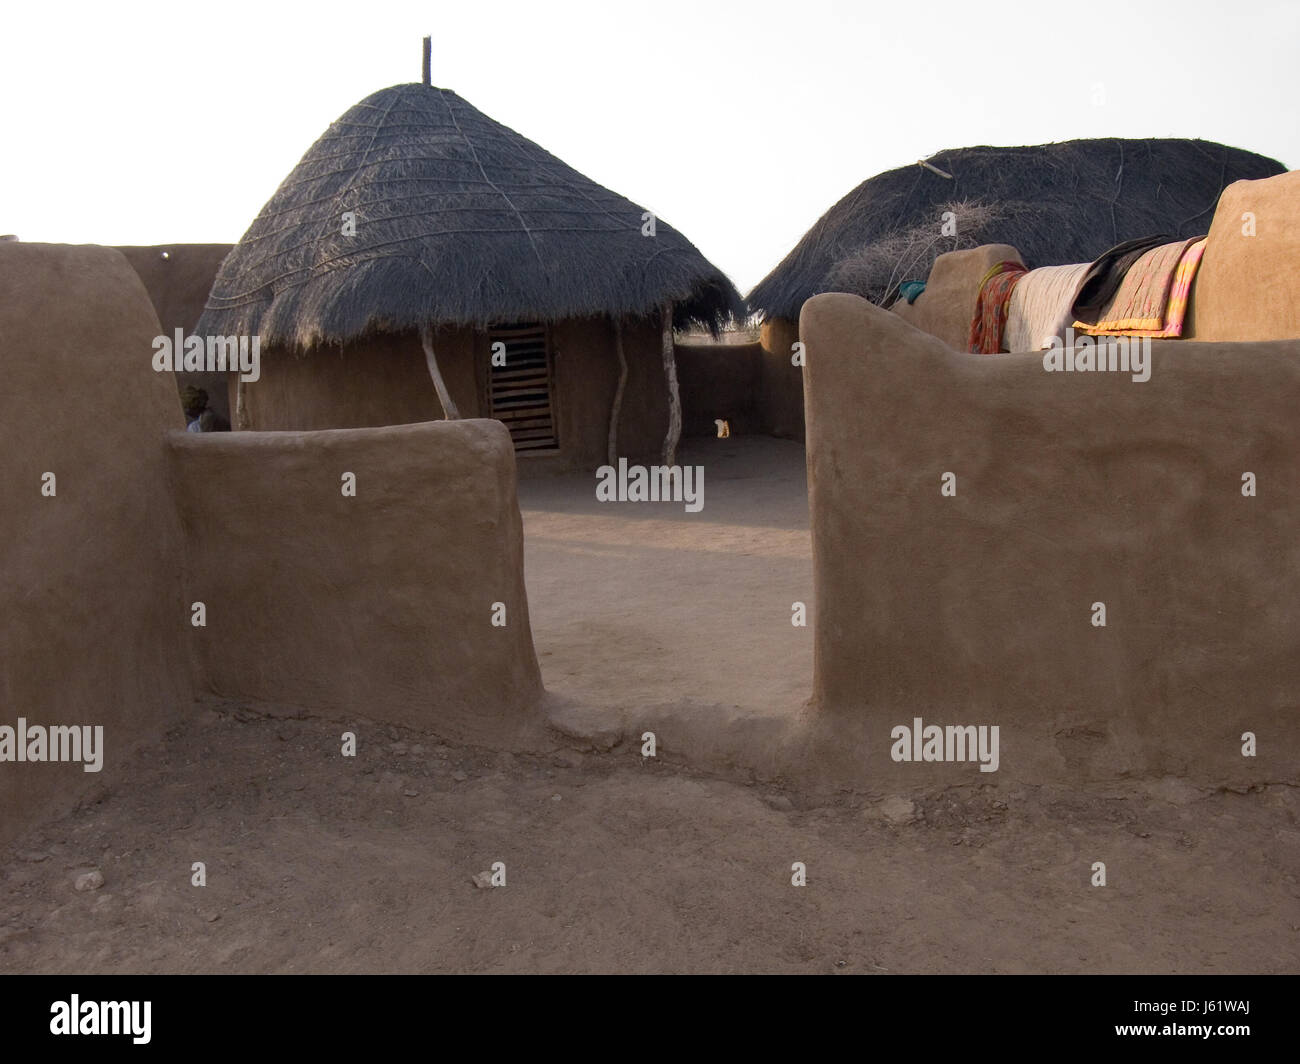 La construction d'accueil habitation immeuble d'Asie désert désert Banque D'Images